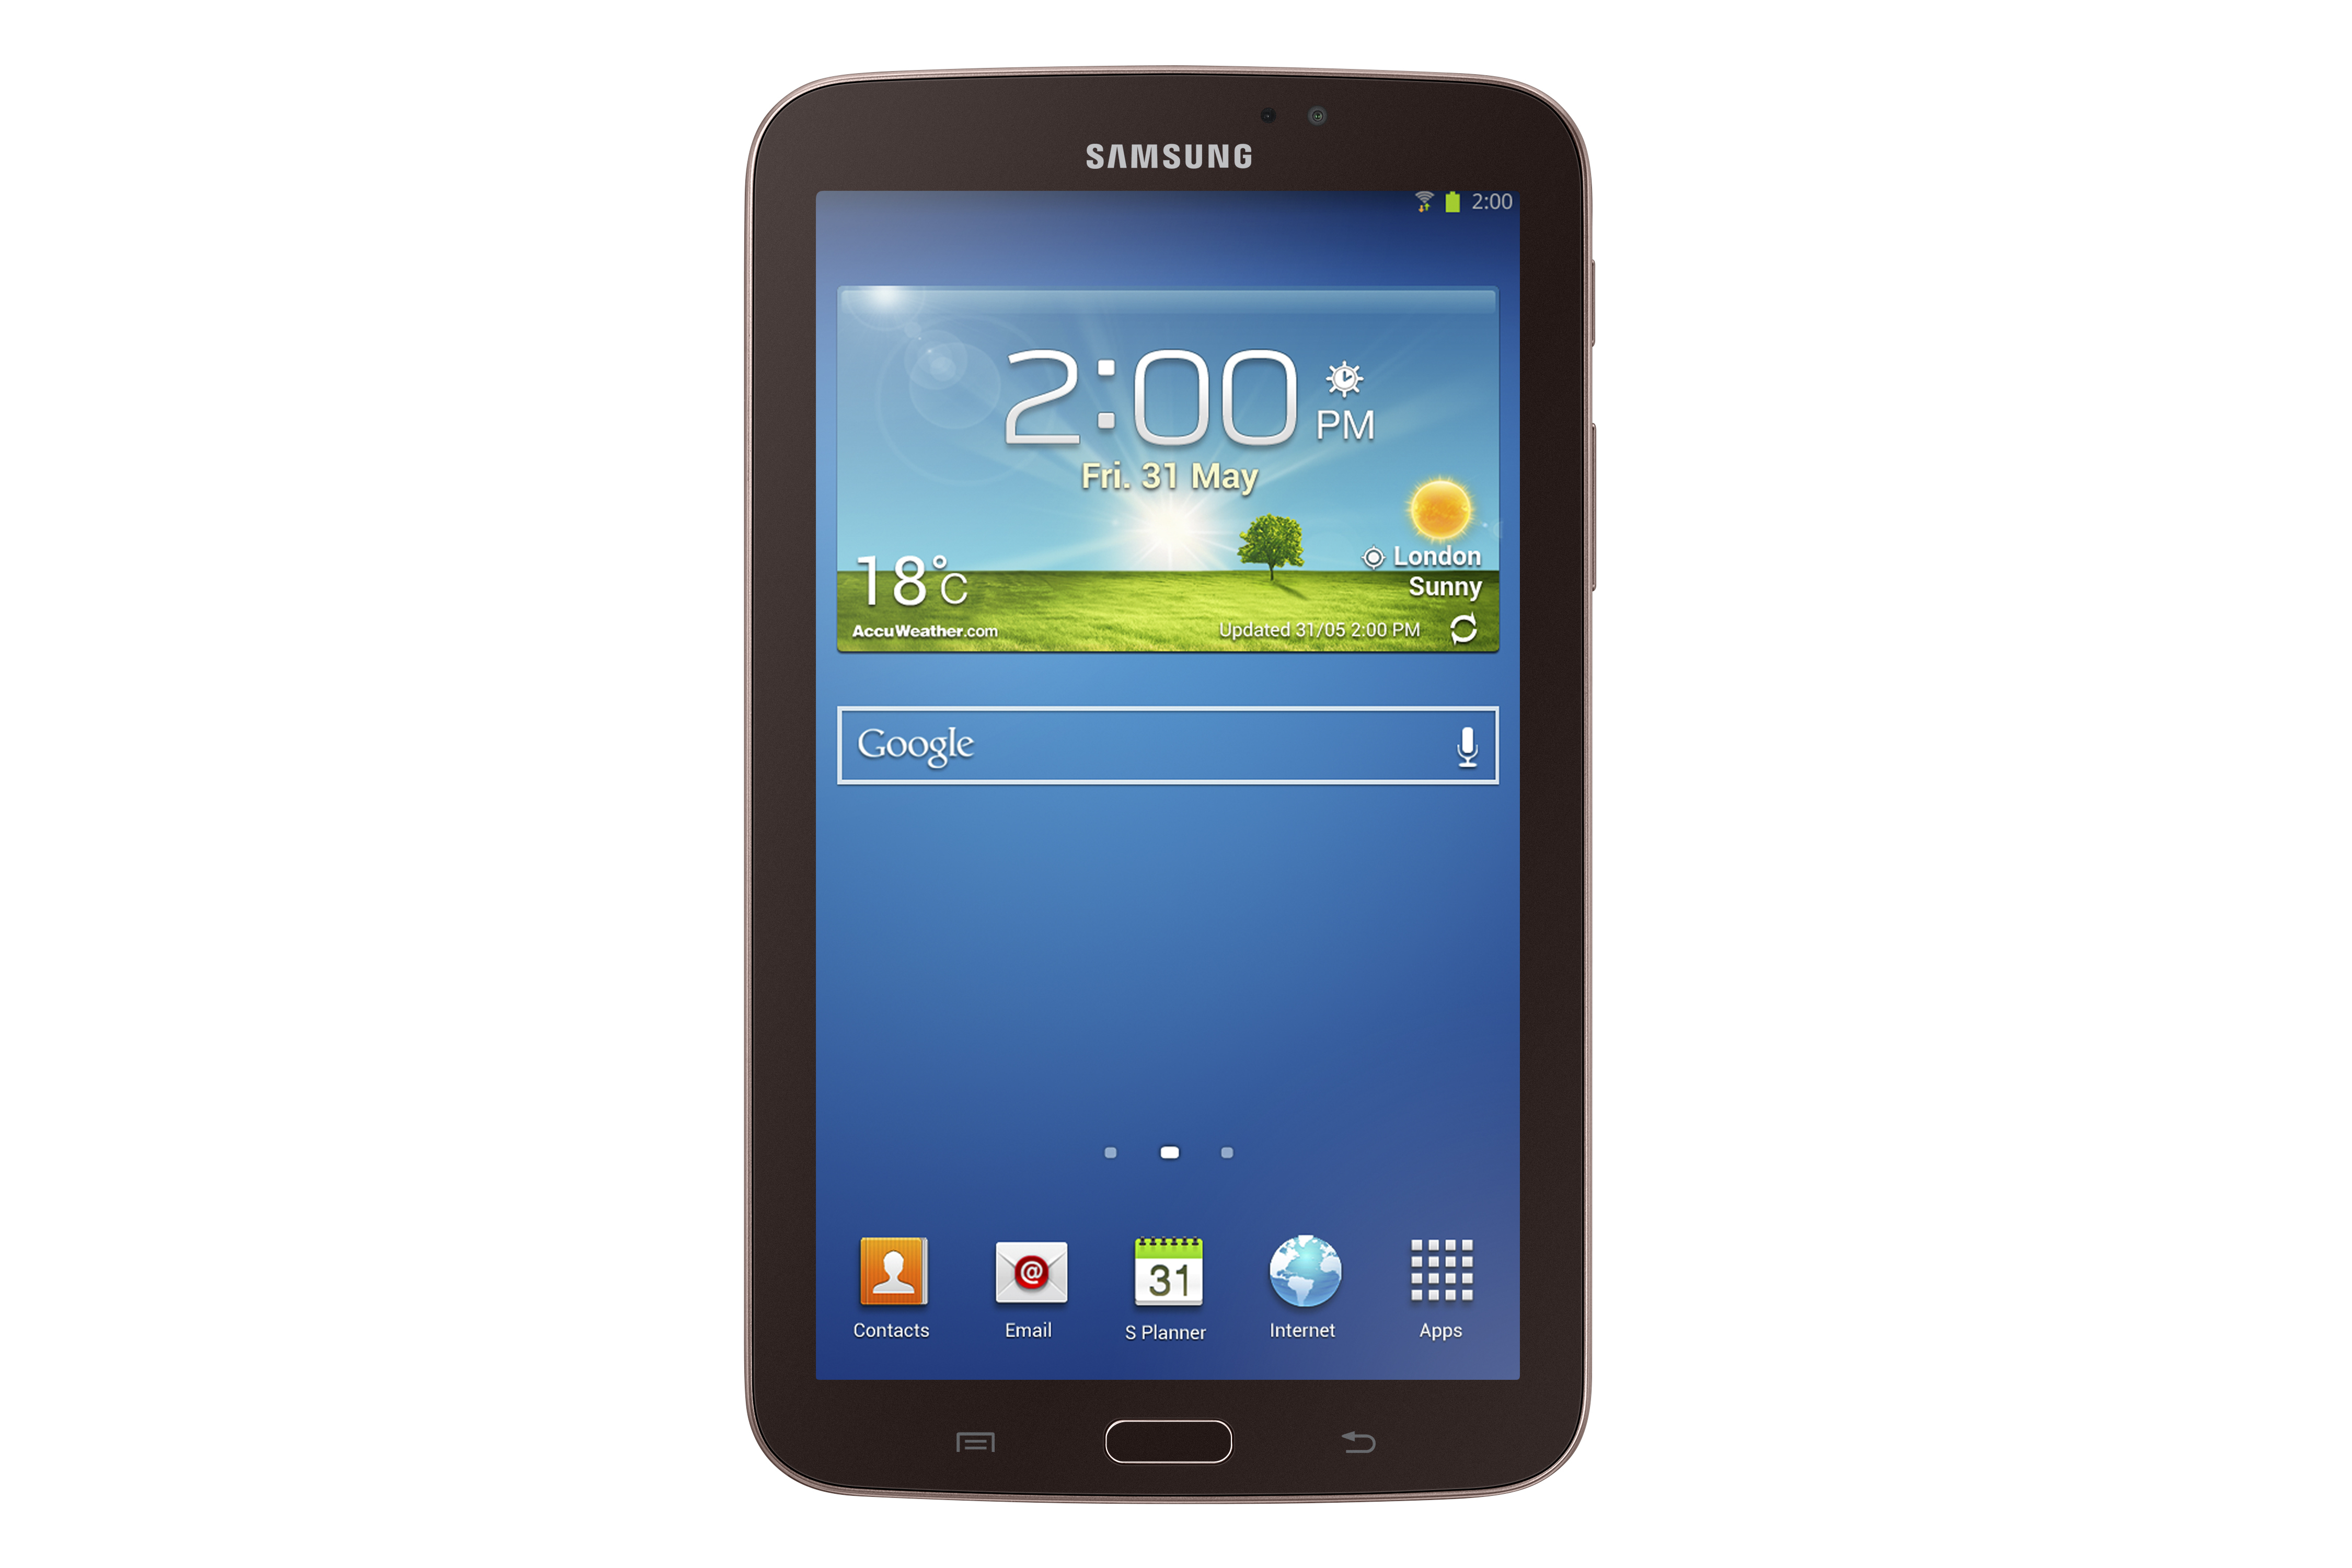 Máy tính bảng Samsung Galaxy Tab 3 7.0 (T211 / SM-T211) - 8GB, Wifi + 3G, 7.0 inch